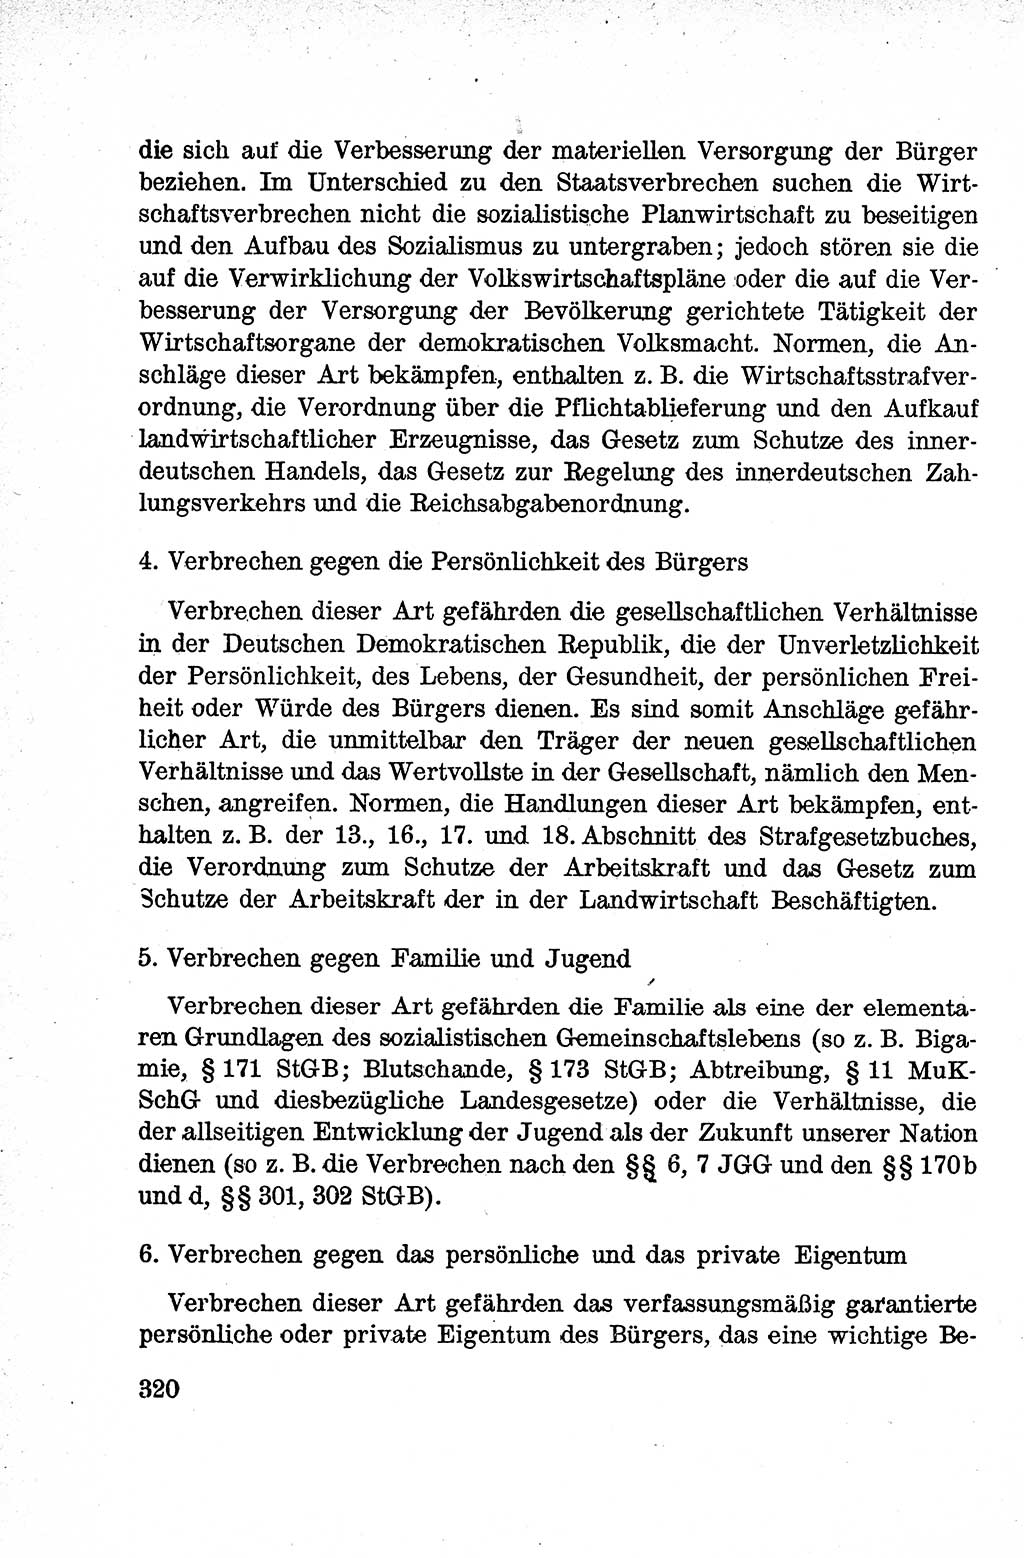 Lehrbuch des Strafrechts der Deutschen Demokratischen Republik (DDR), Allgemeiner Teil 1959, Seite 320 (Lb. Strafr. DDR AT 1959, S. 320)